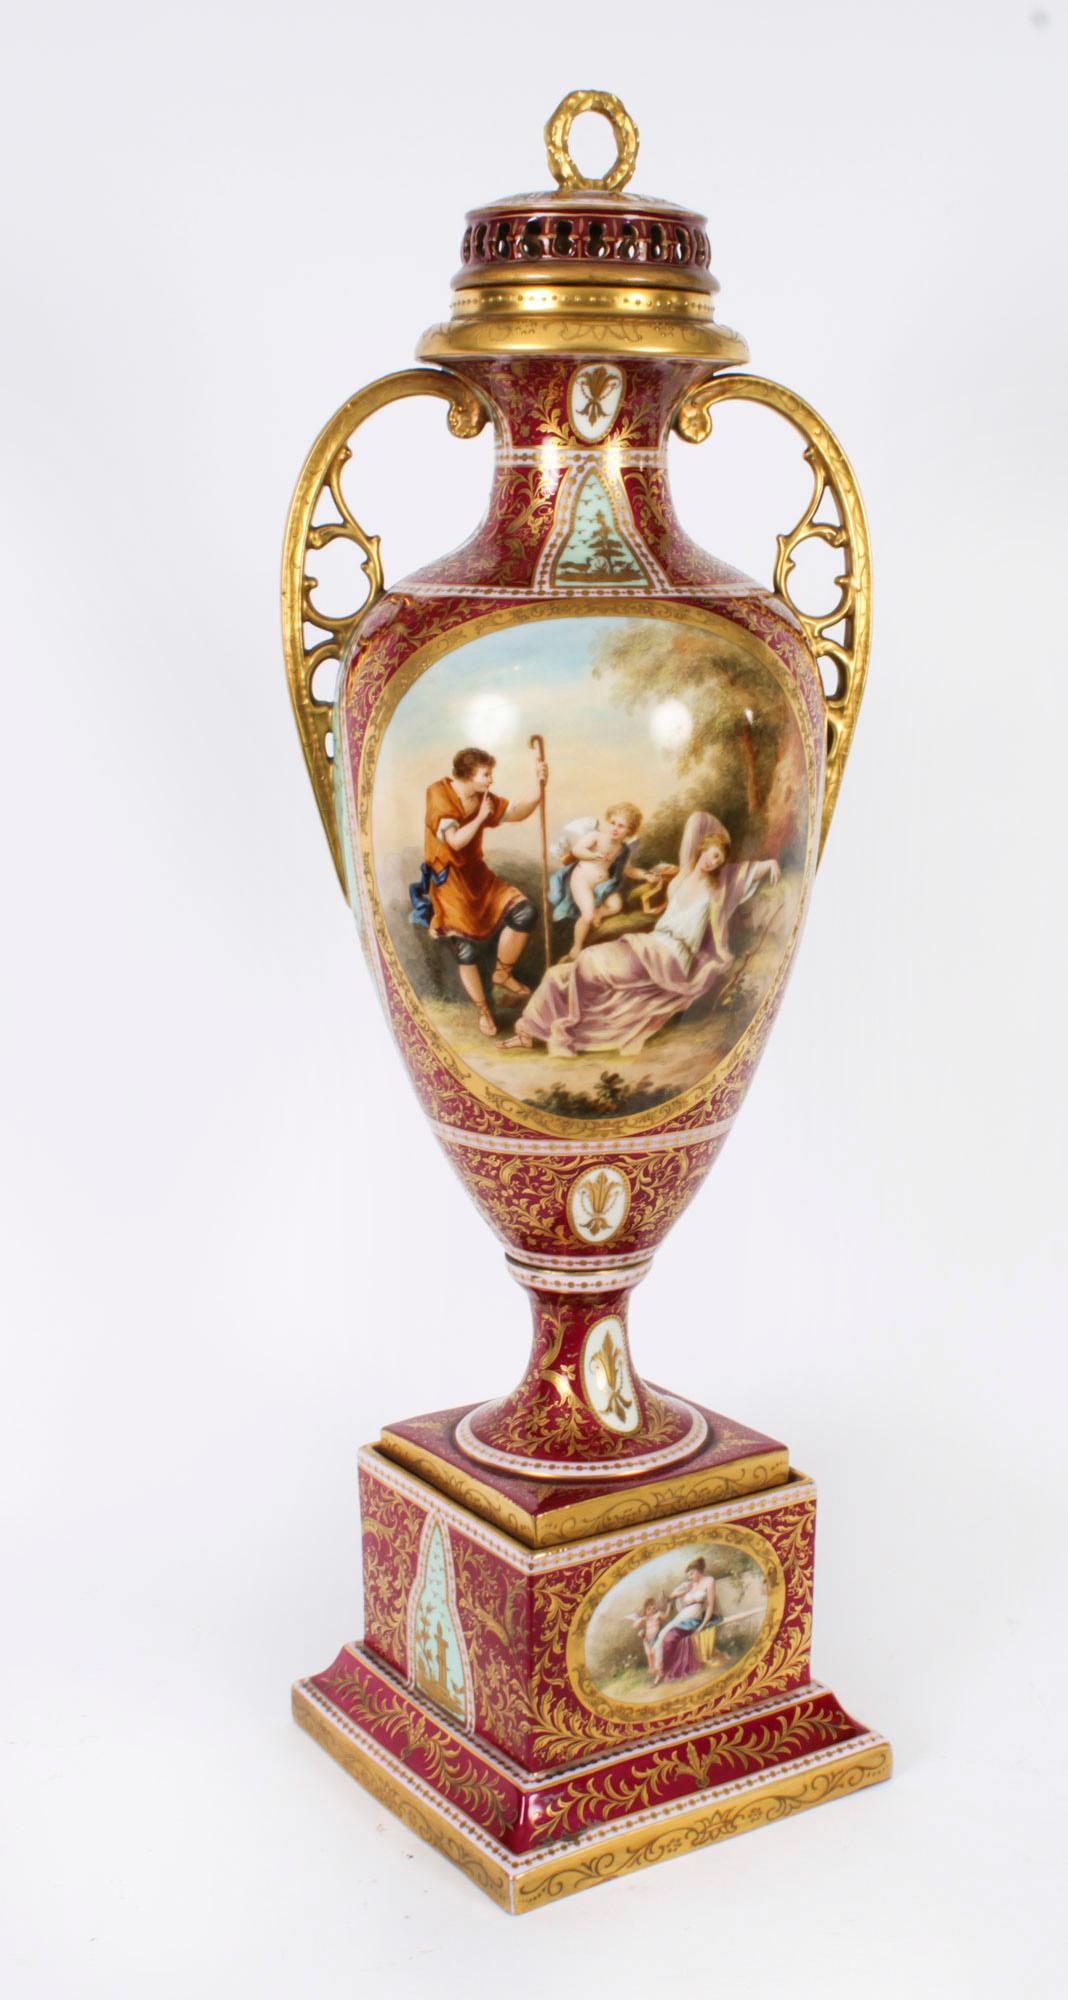 Il s'agit d'une magnifique paire de vases anciens en porcelaine à double anse de Vienne royale autrichienne sur pied, portant la signature de l'artiste et datant de la seconde moitié du 19e siècle.

Chacune présente de superbes scènes mythologiques